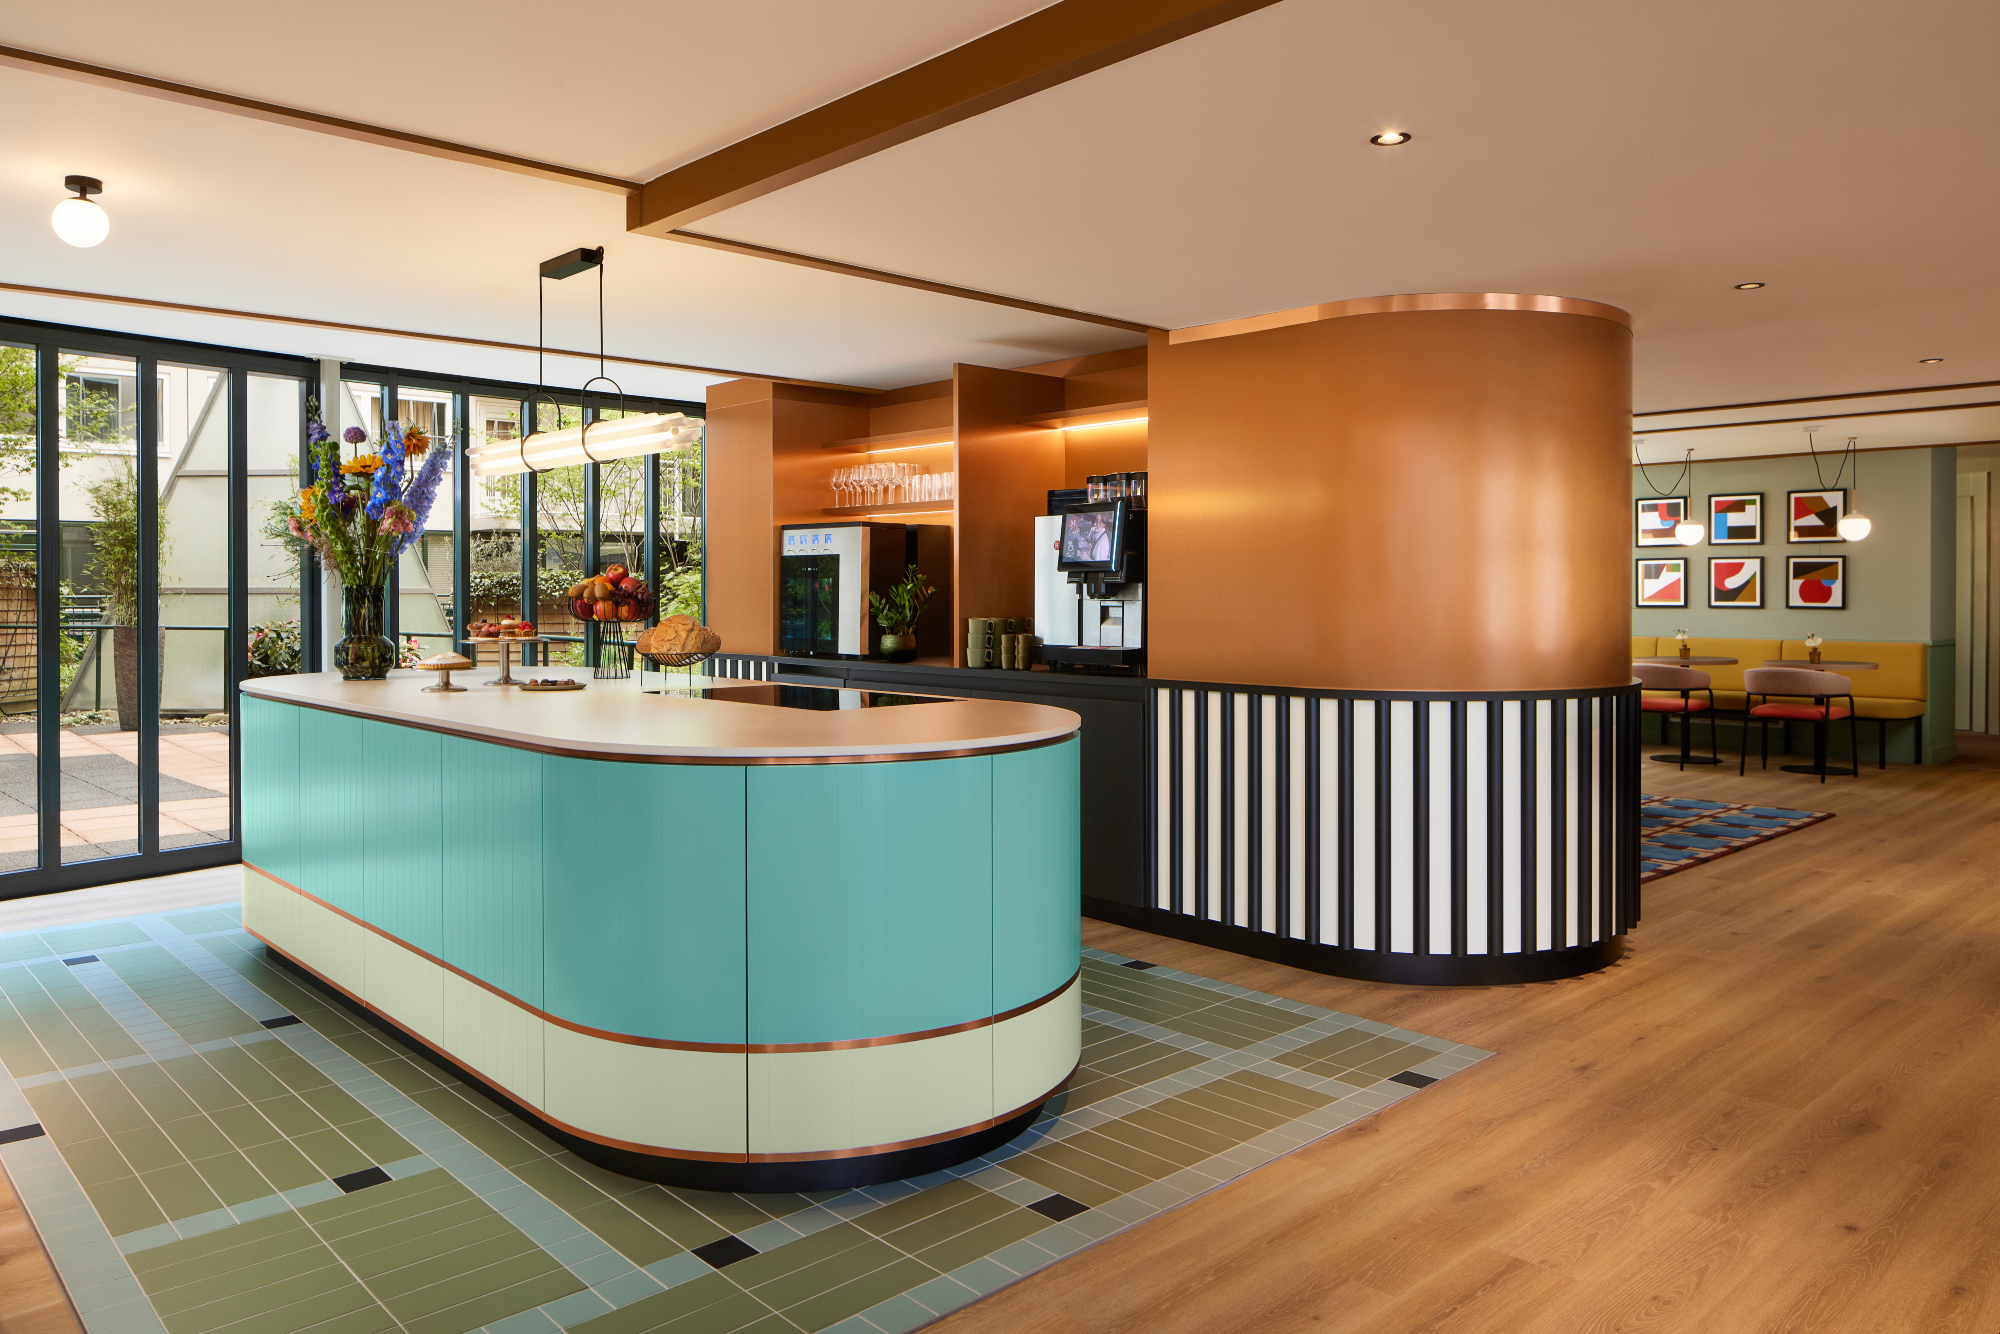 Avani opent eerste hotel in Nederland